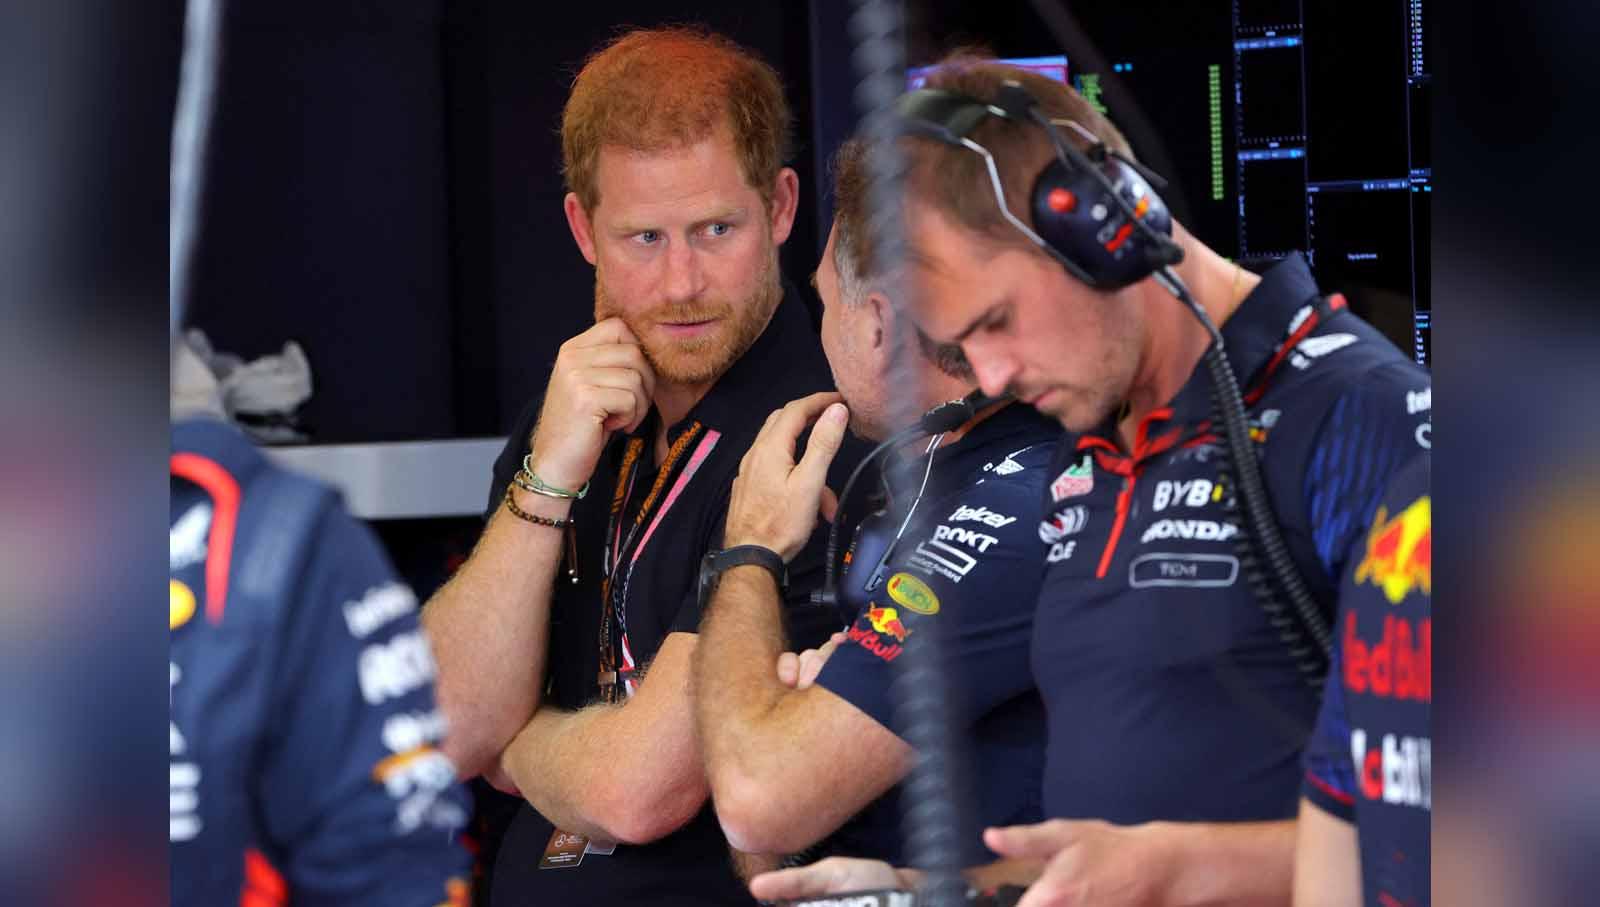 Pangeran Harry sedang berbicara dengan kepala tim Red Bull, Christian Horner, menjelang dimulainya balapan. (Foto: REUTERS/Brian Snyder)